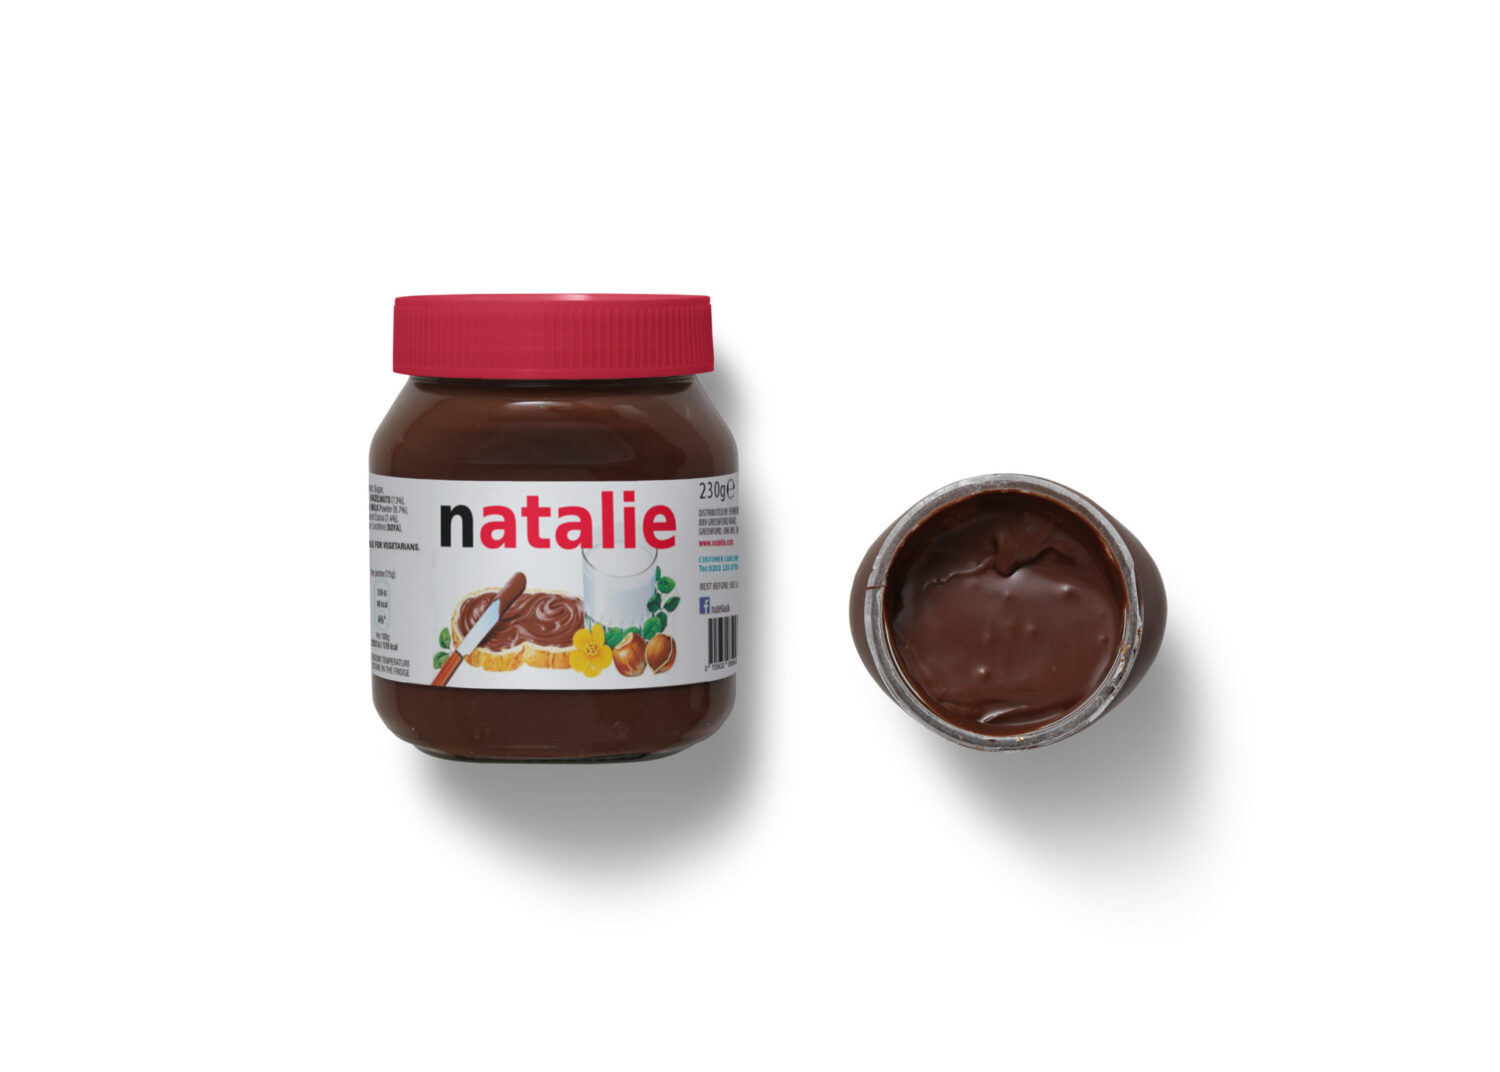 Natalie Melt Chocolate Packaging Label Mockup